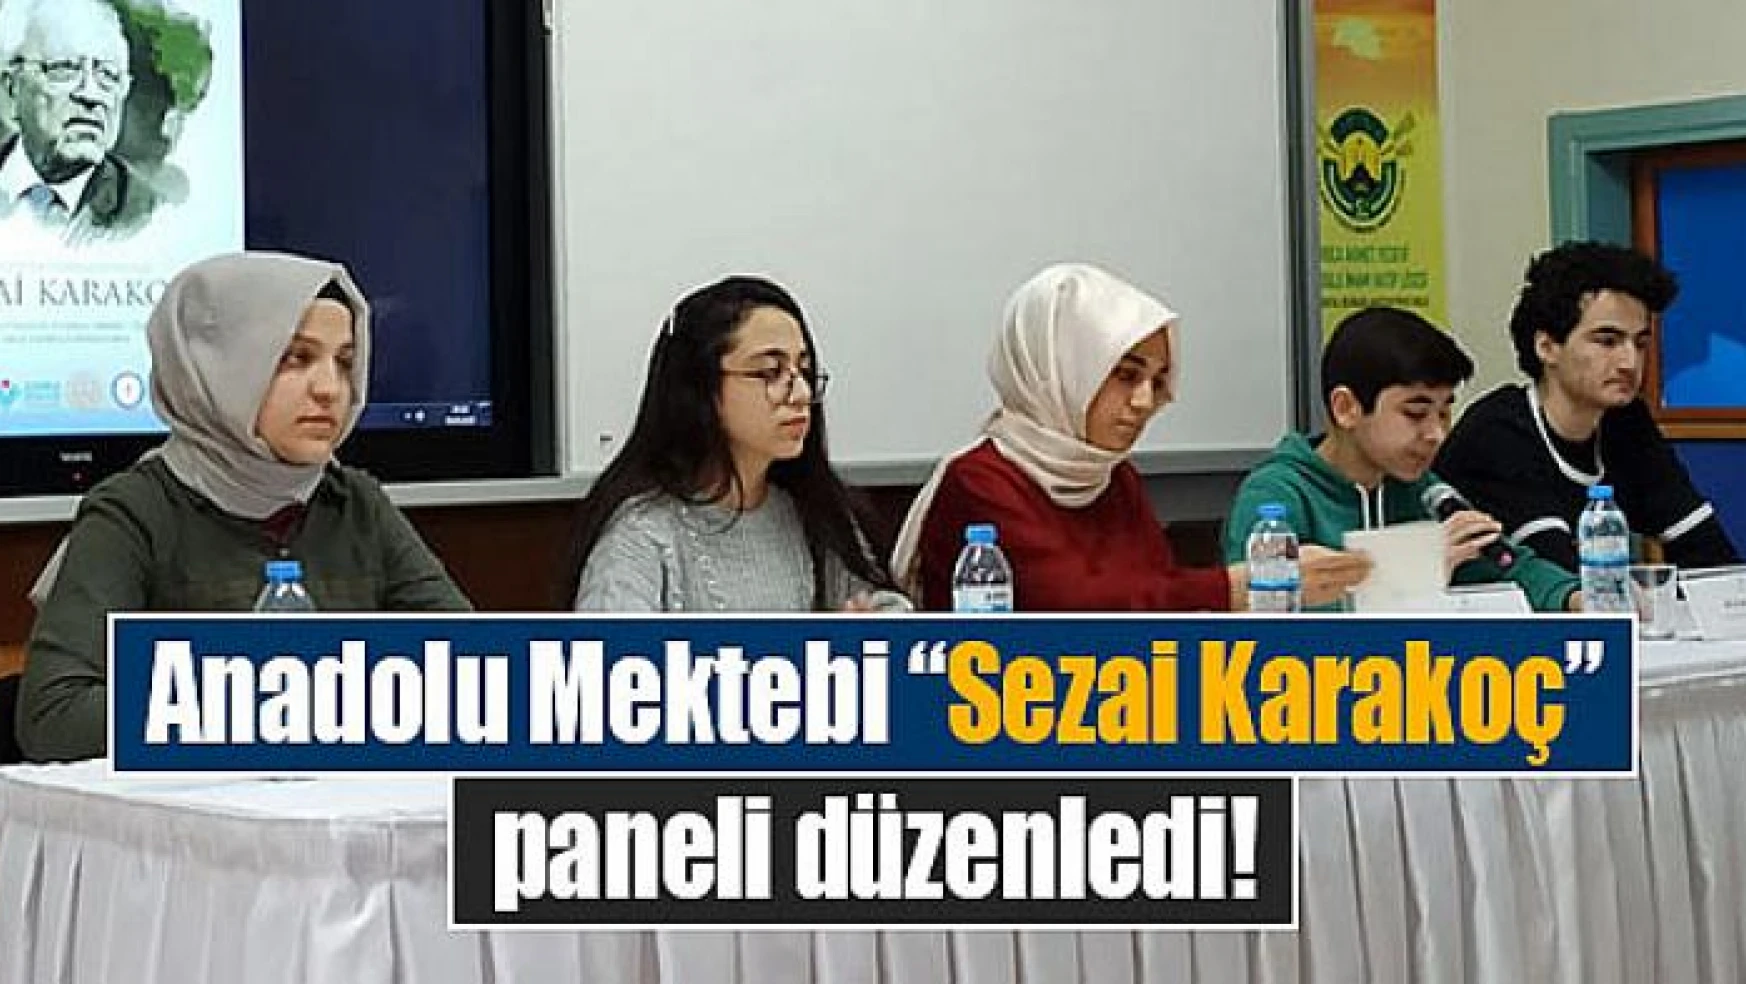 Anadolu Mektebi 'Sezai Karakoç' paneli düzenledi!